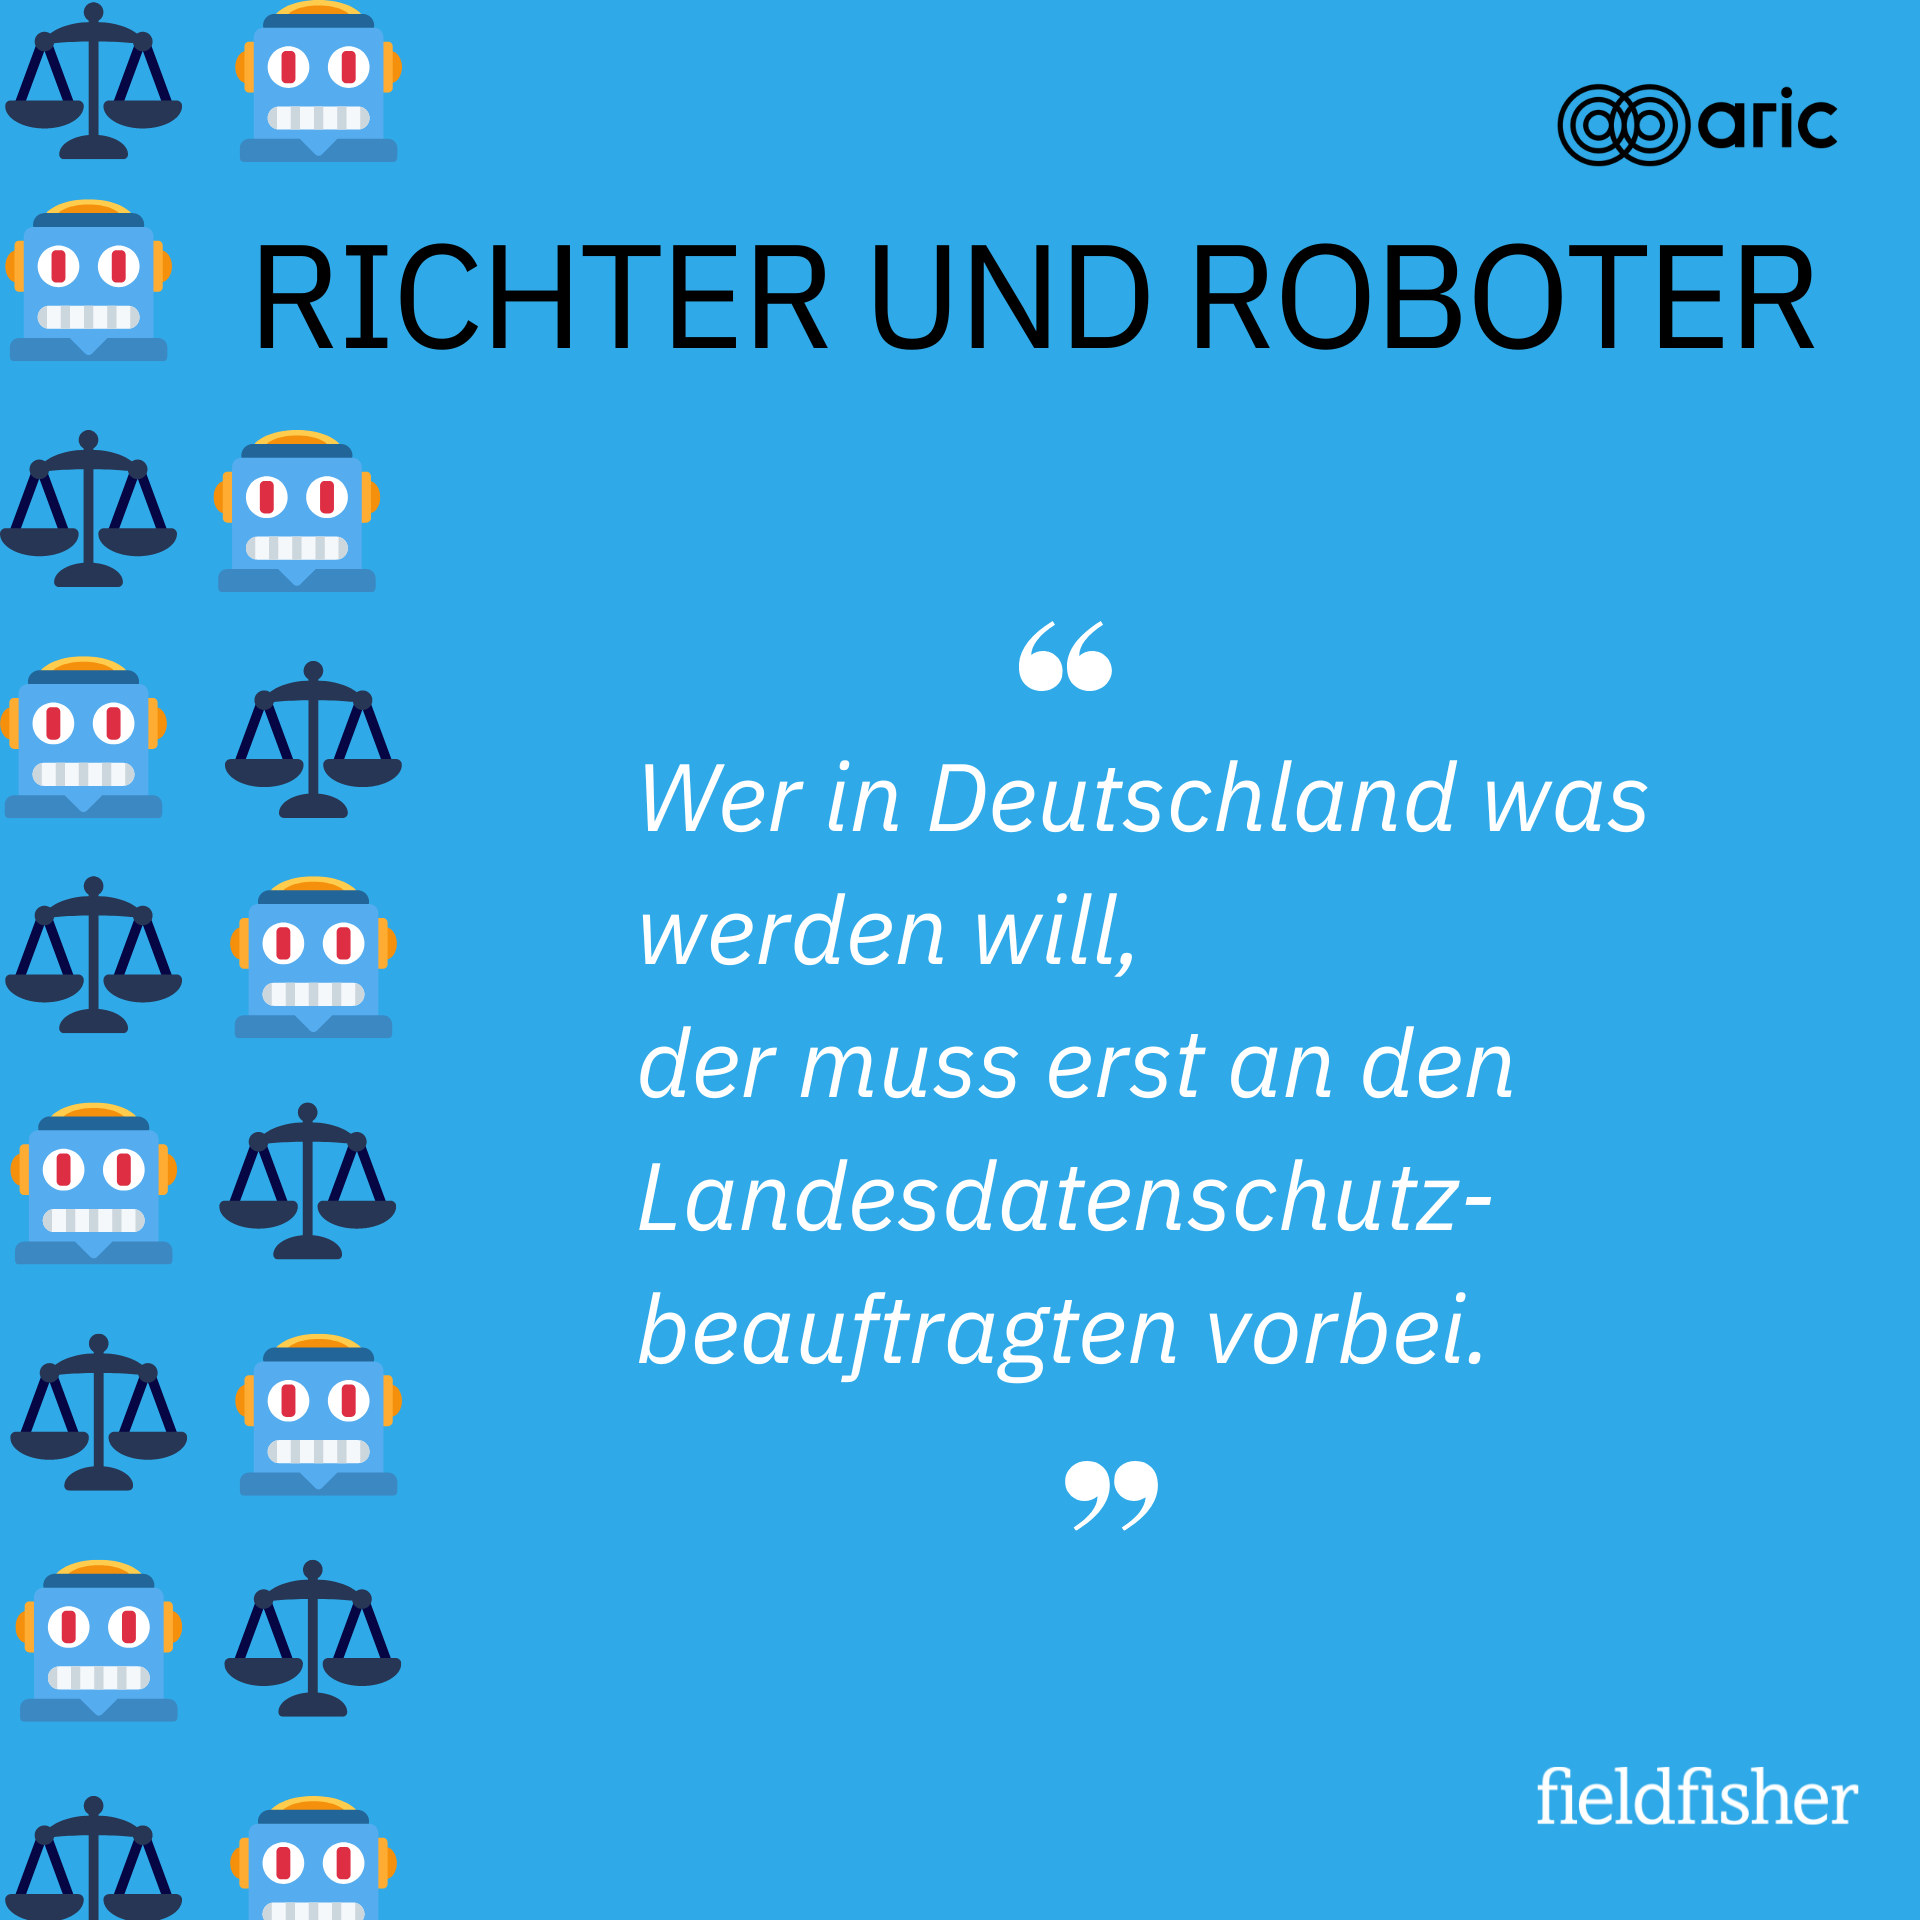 Richter und Roboter by ARIC x Fieldfisher: Wer in Deutschland